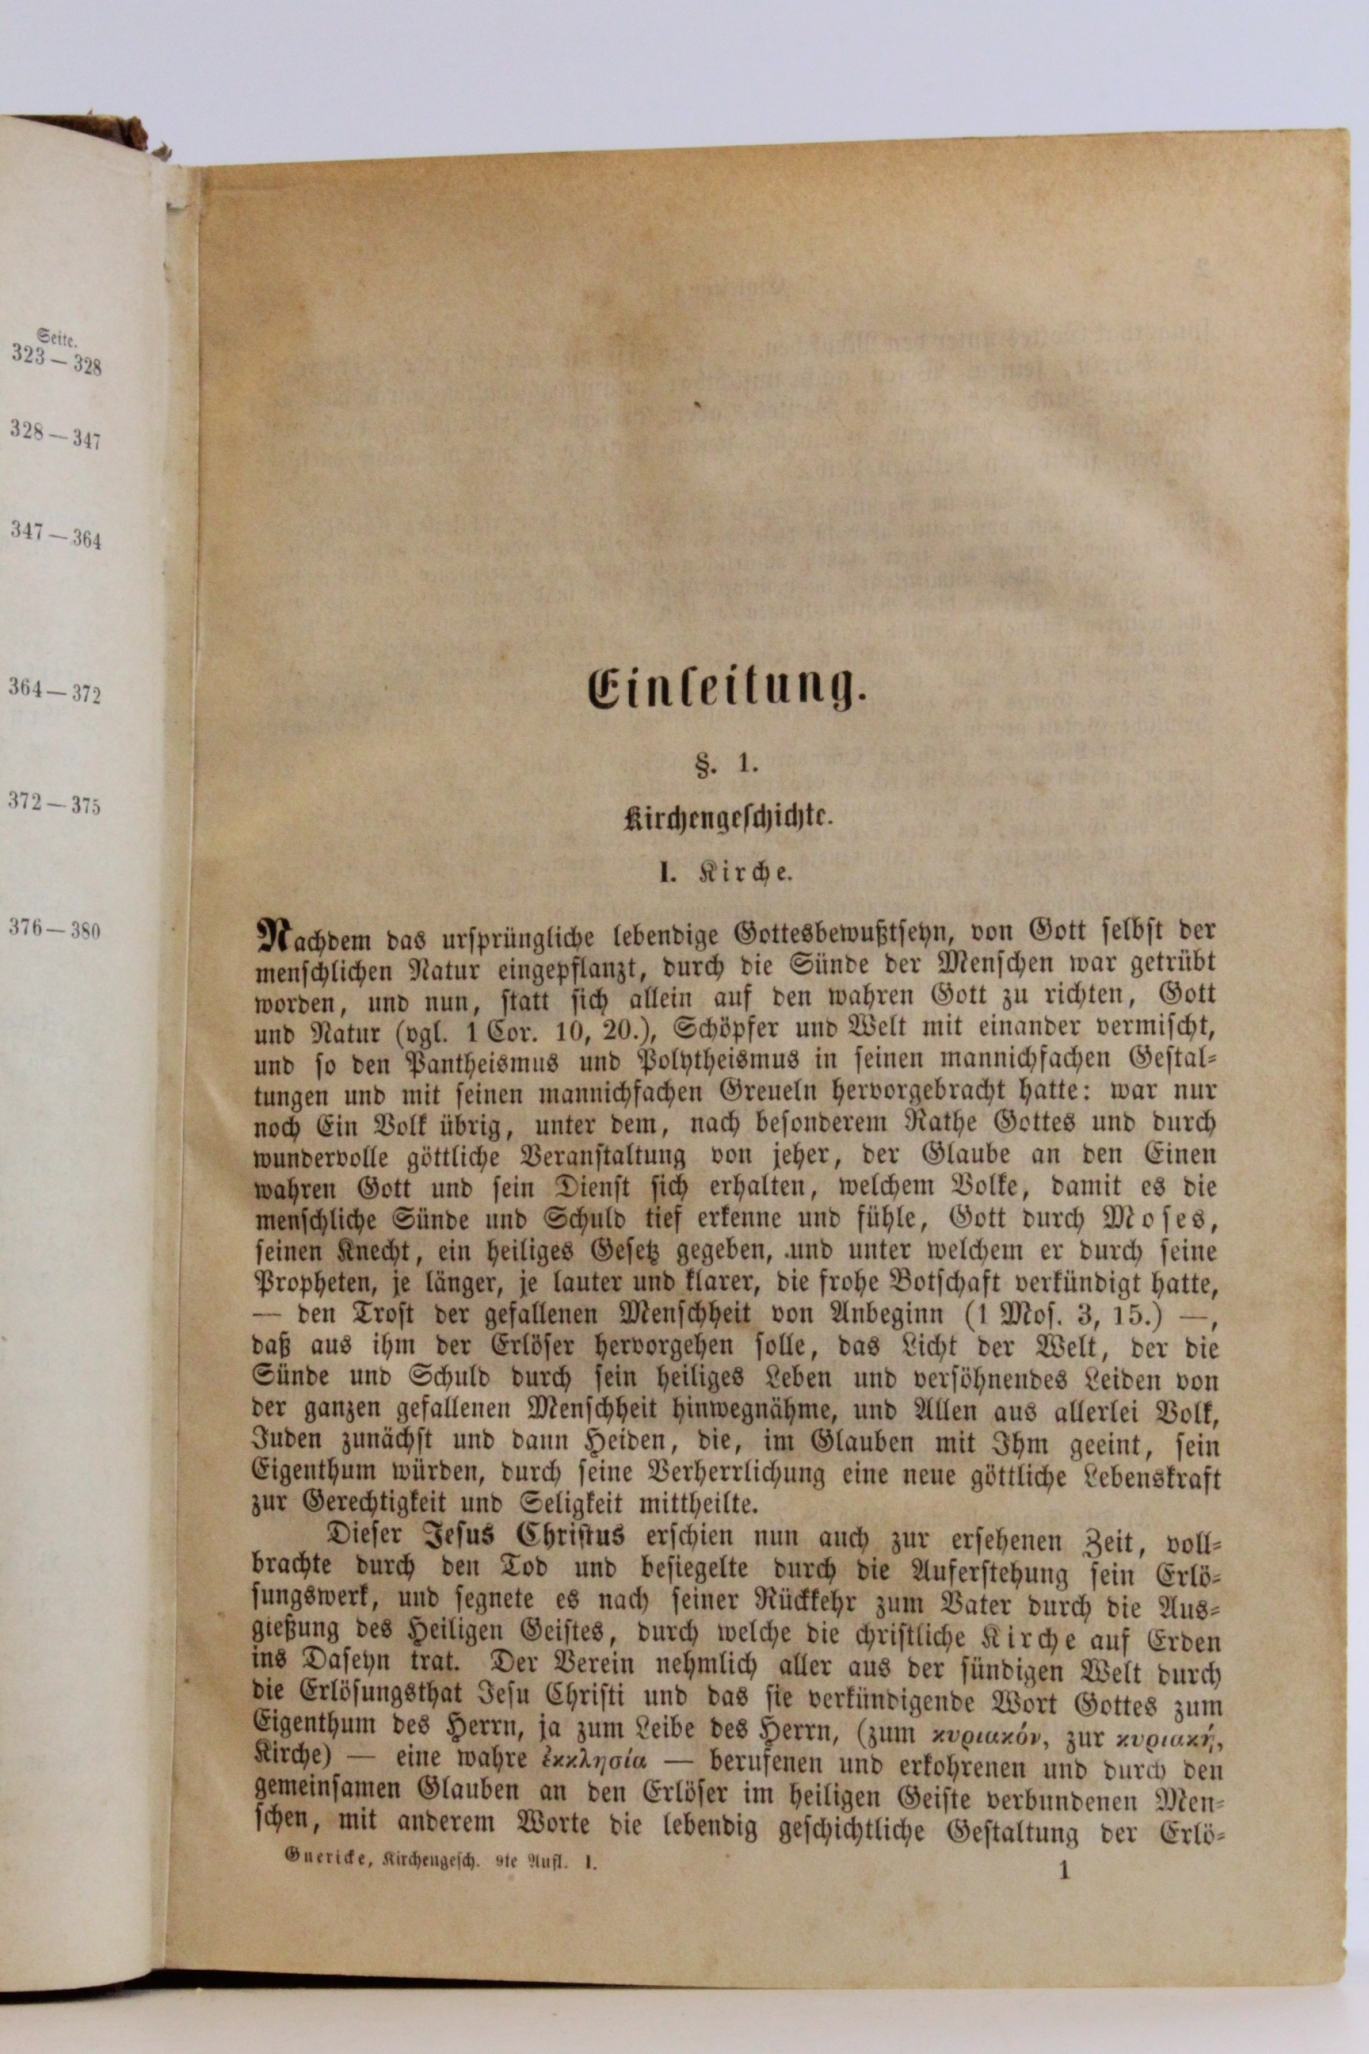 Guericke, Heinrich Ernst Ferdinand: Handbuch der Kirchengeschichte Mit steter Rücksicht auch auf die dogmengeschichtliche Bewegung